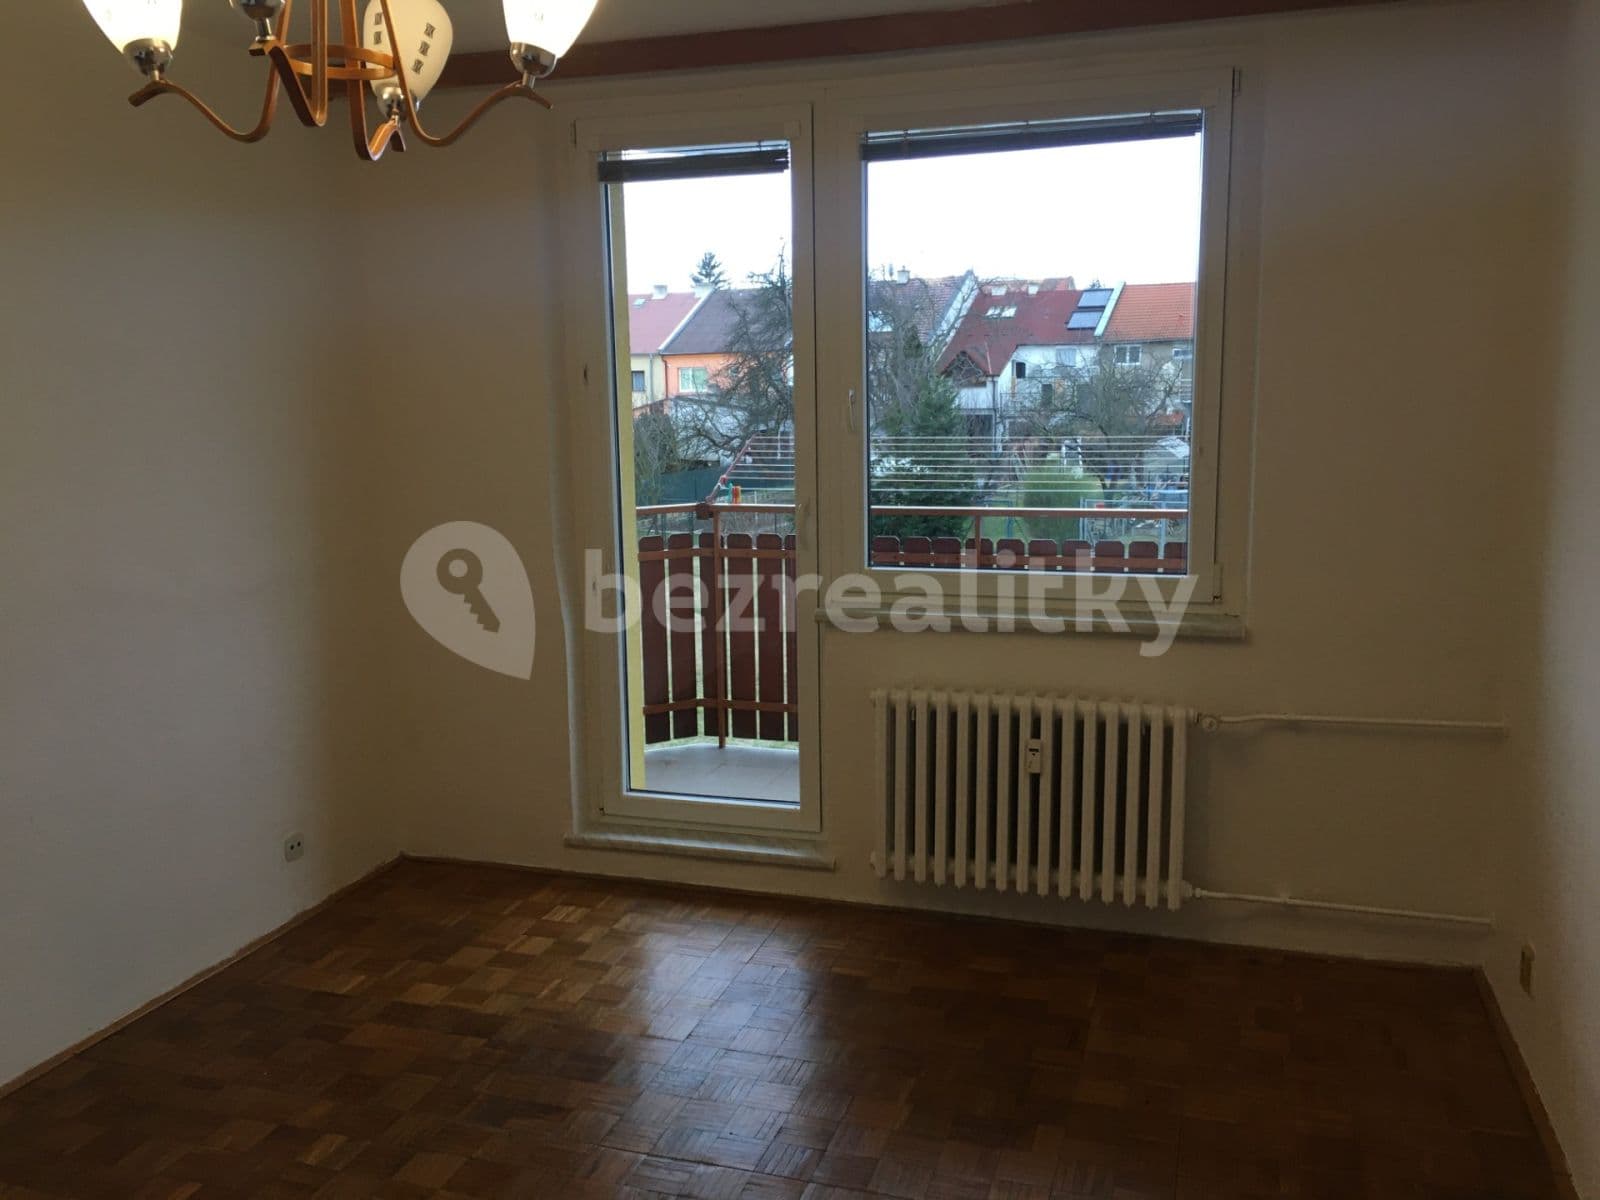 1 bedroom flat to rent, 35 m², Sportovní, Kostelec na Hané, Olomoucký Region